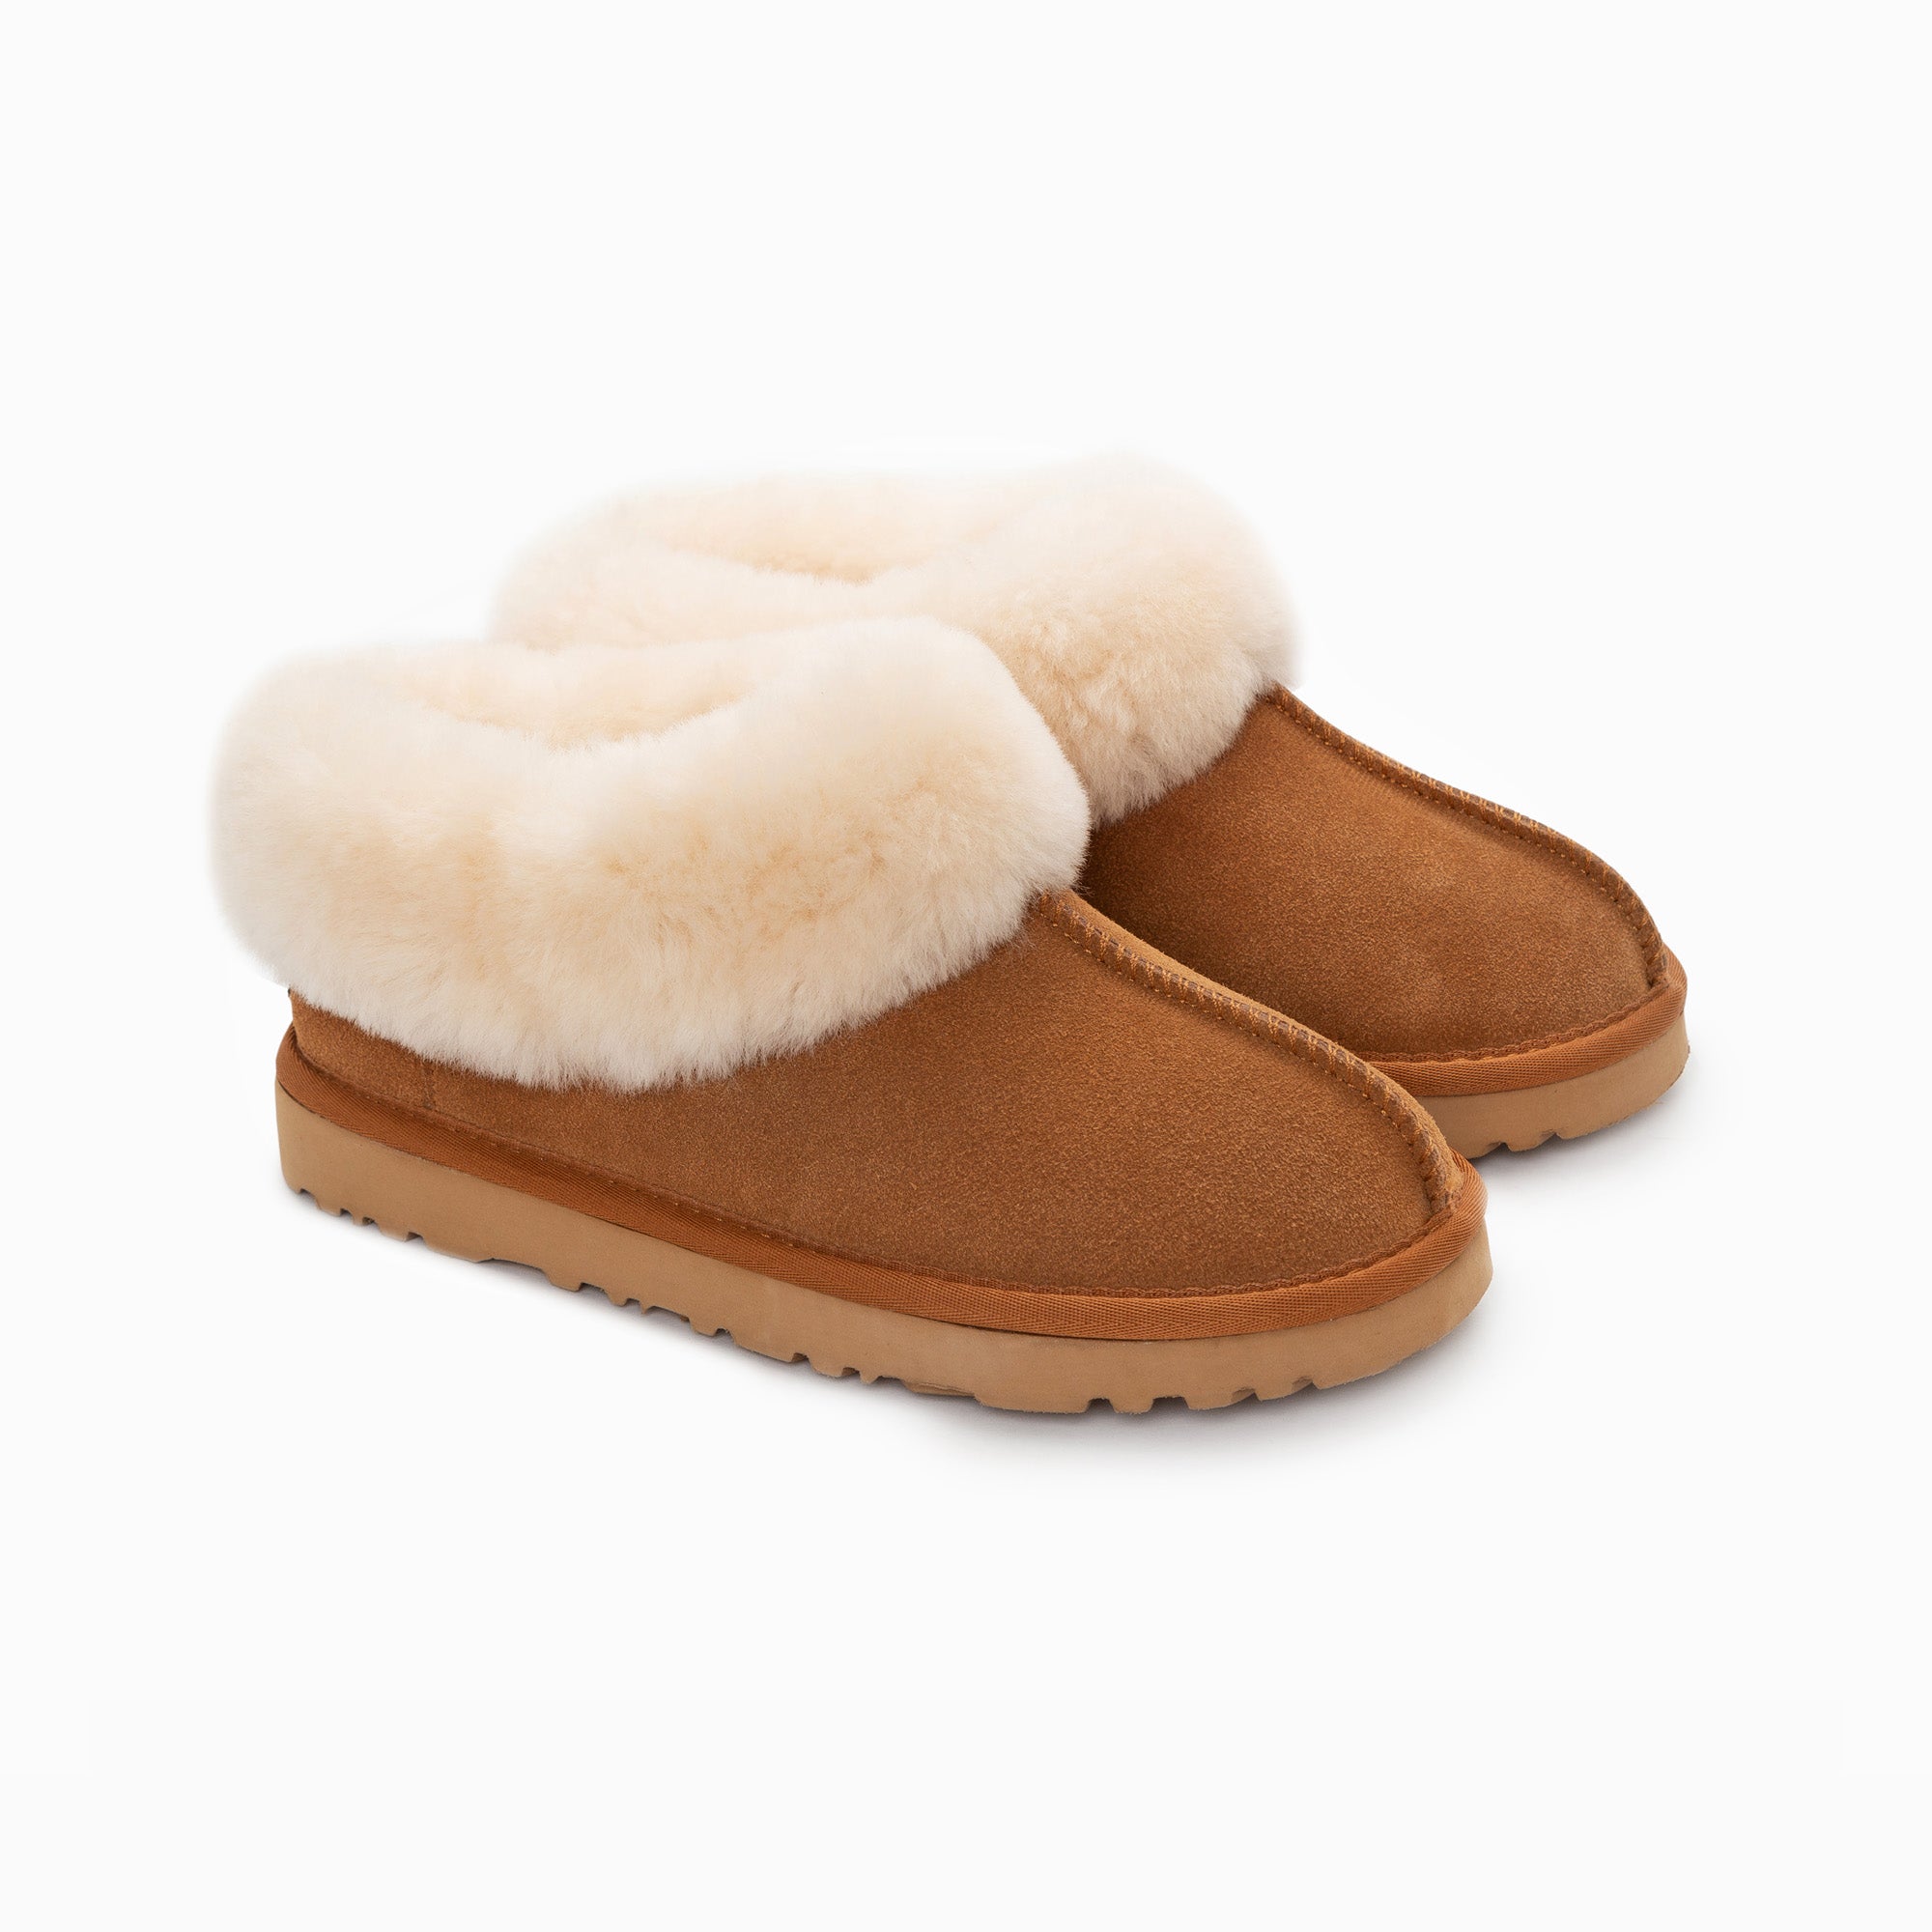 Ugg Slippers Collar Unisex Premium Sheepskin Slippers Suede